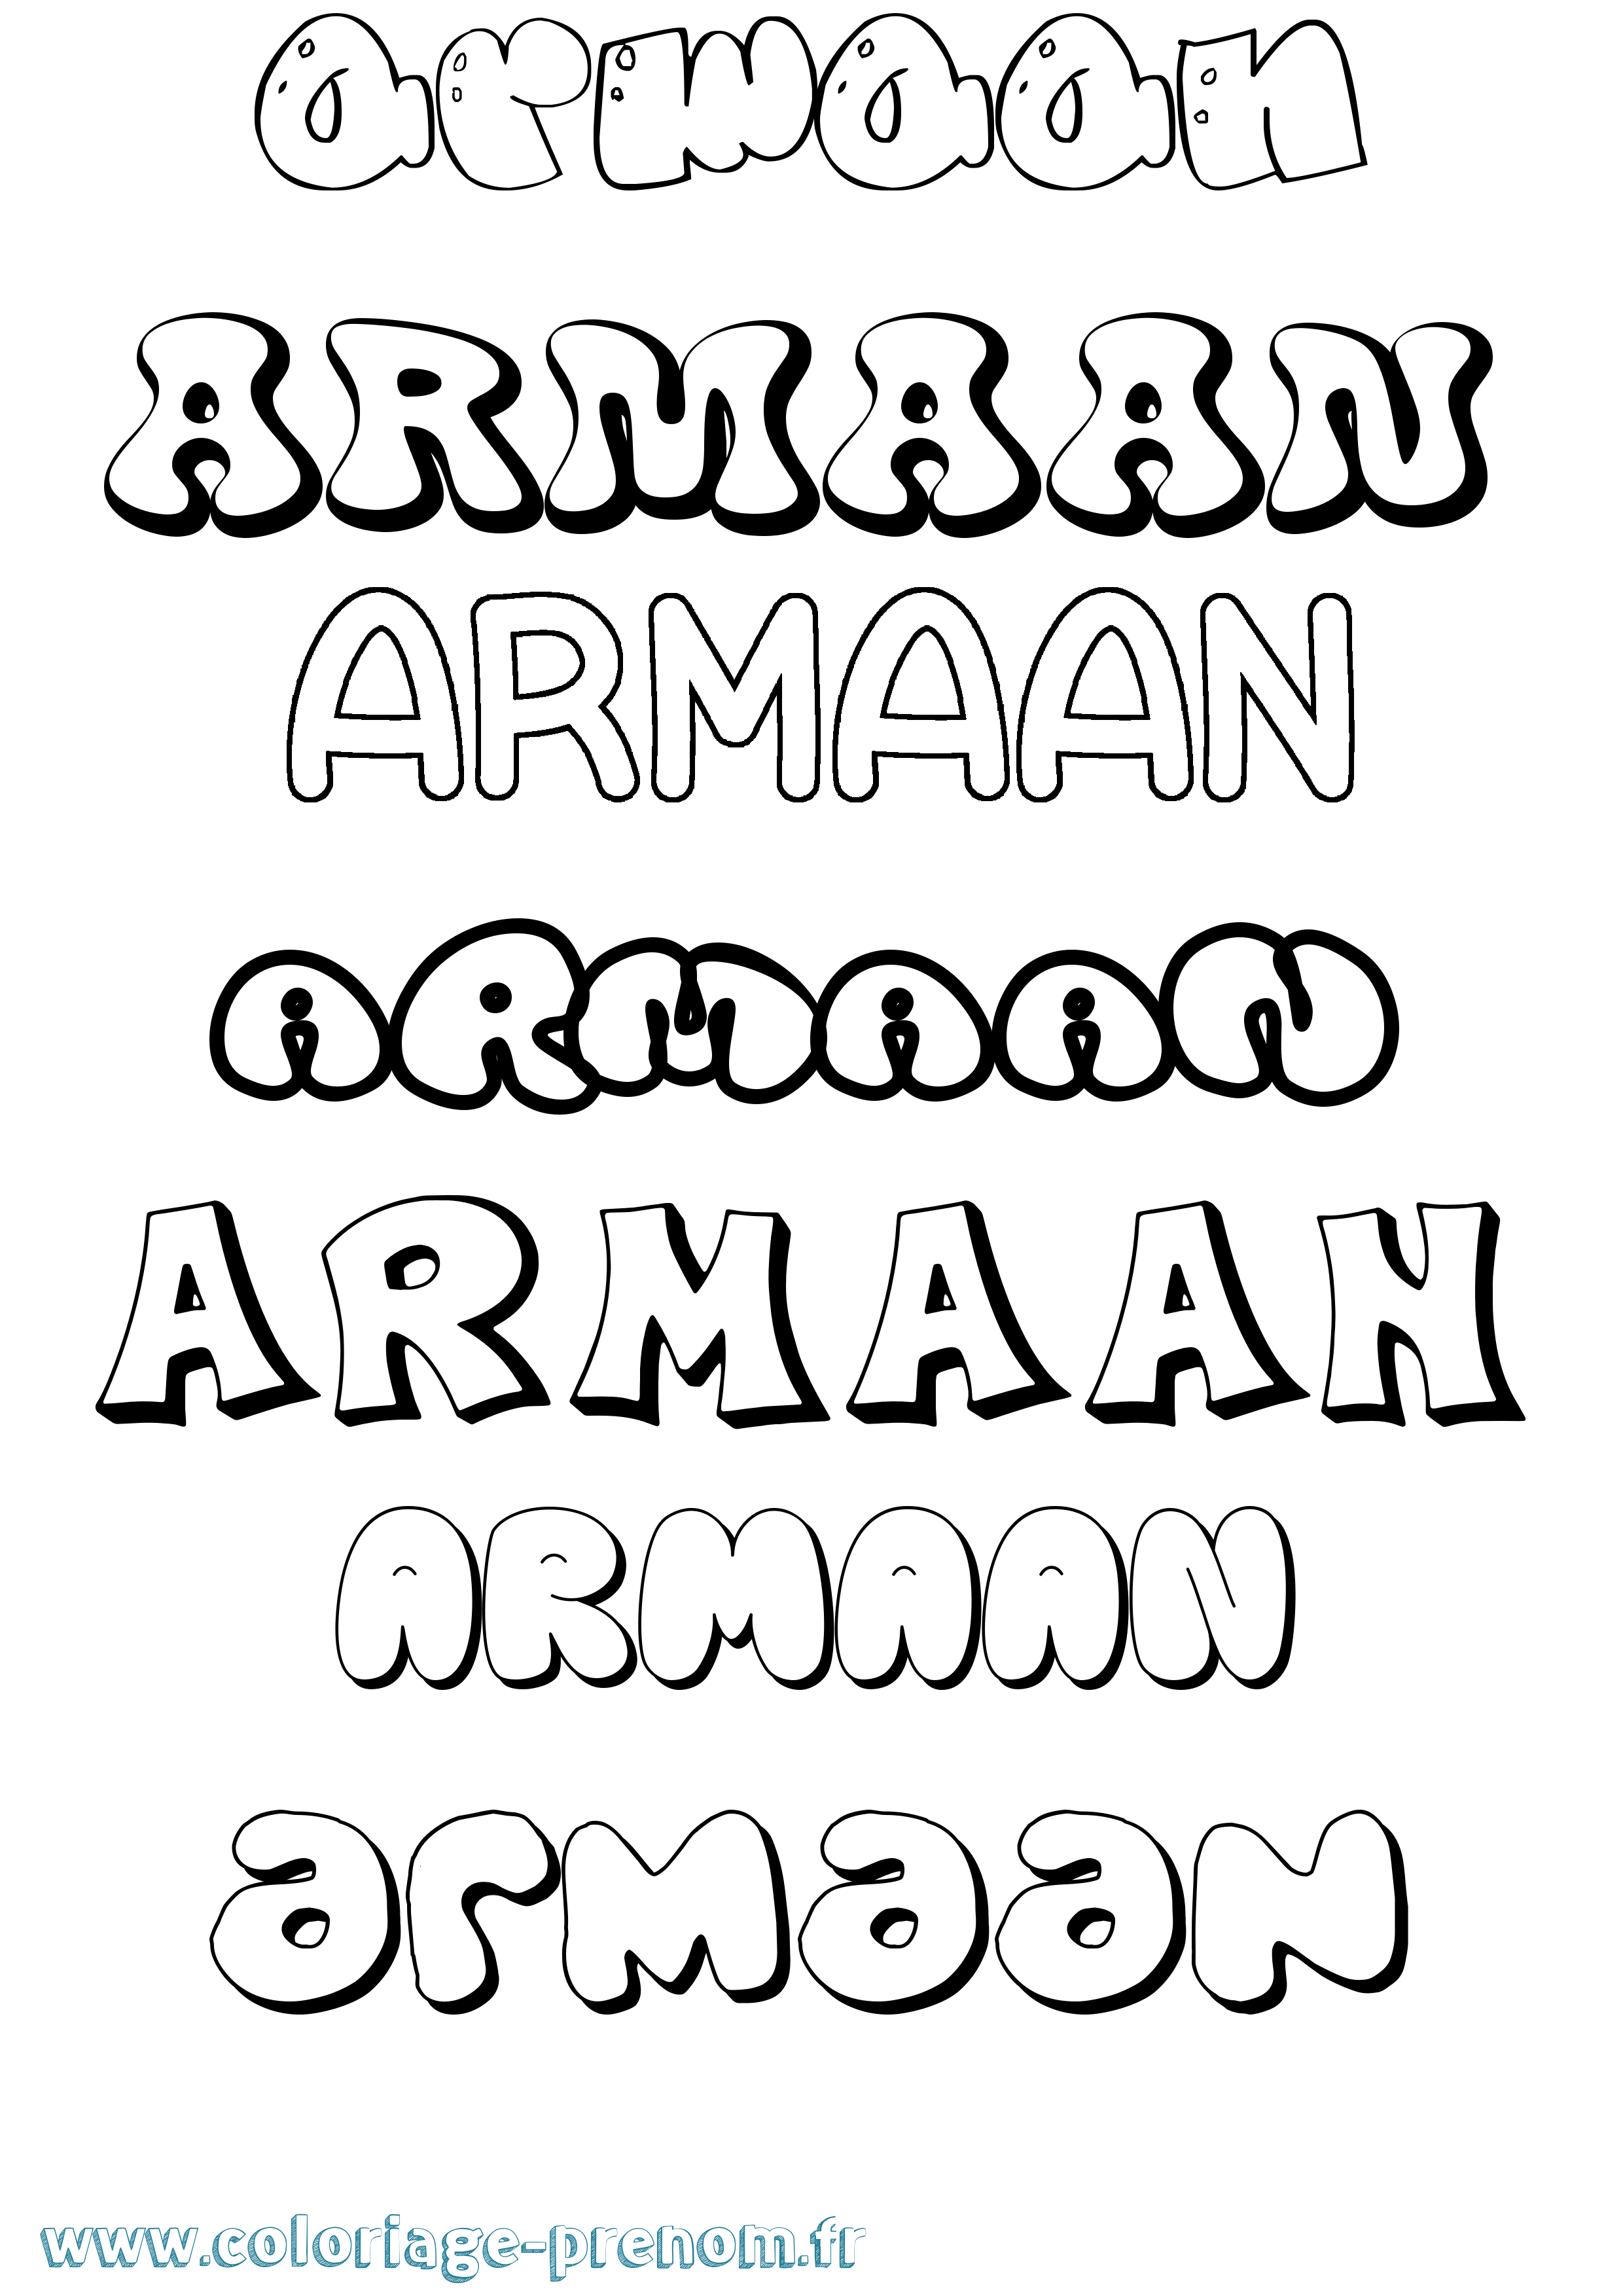 Coloriage prénom Armaan Bubble